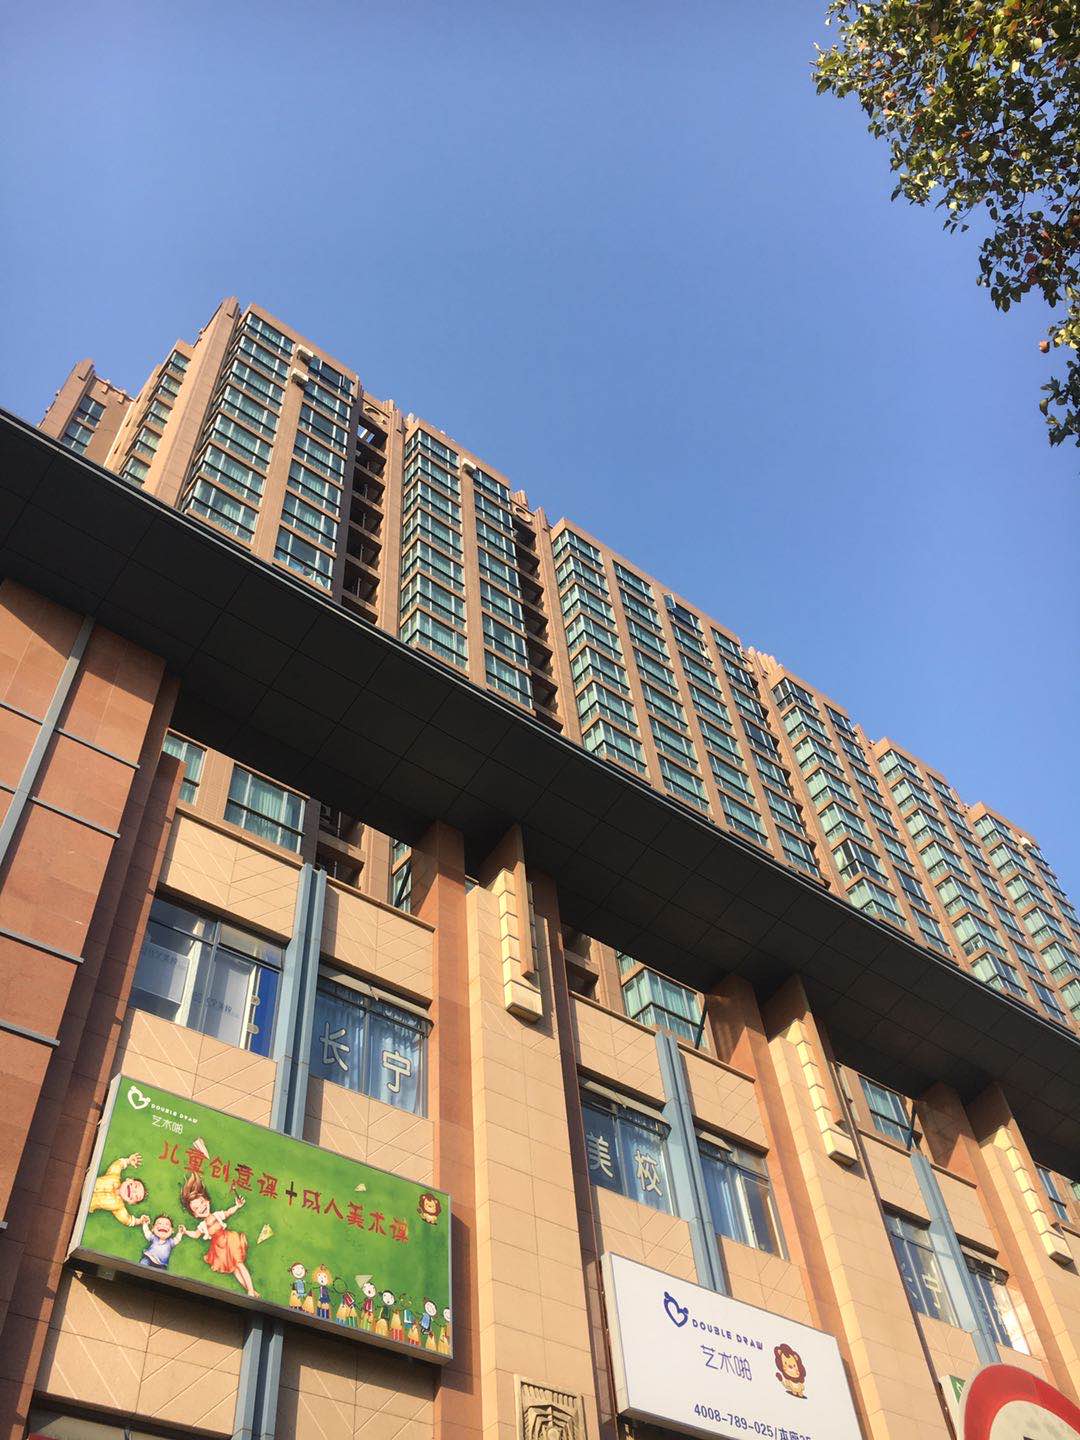 【上海市衡辰公寓楼盘】房价,户型,开盘时间详情 实景图